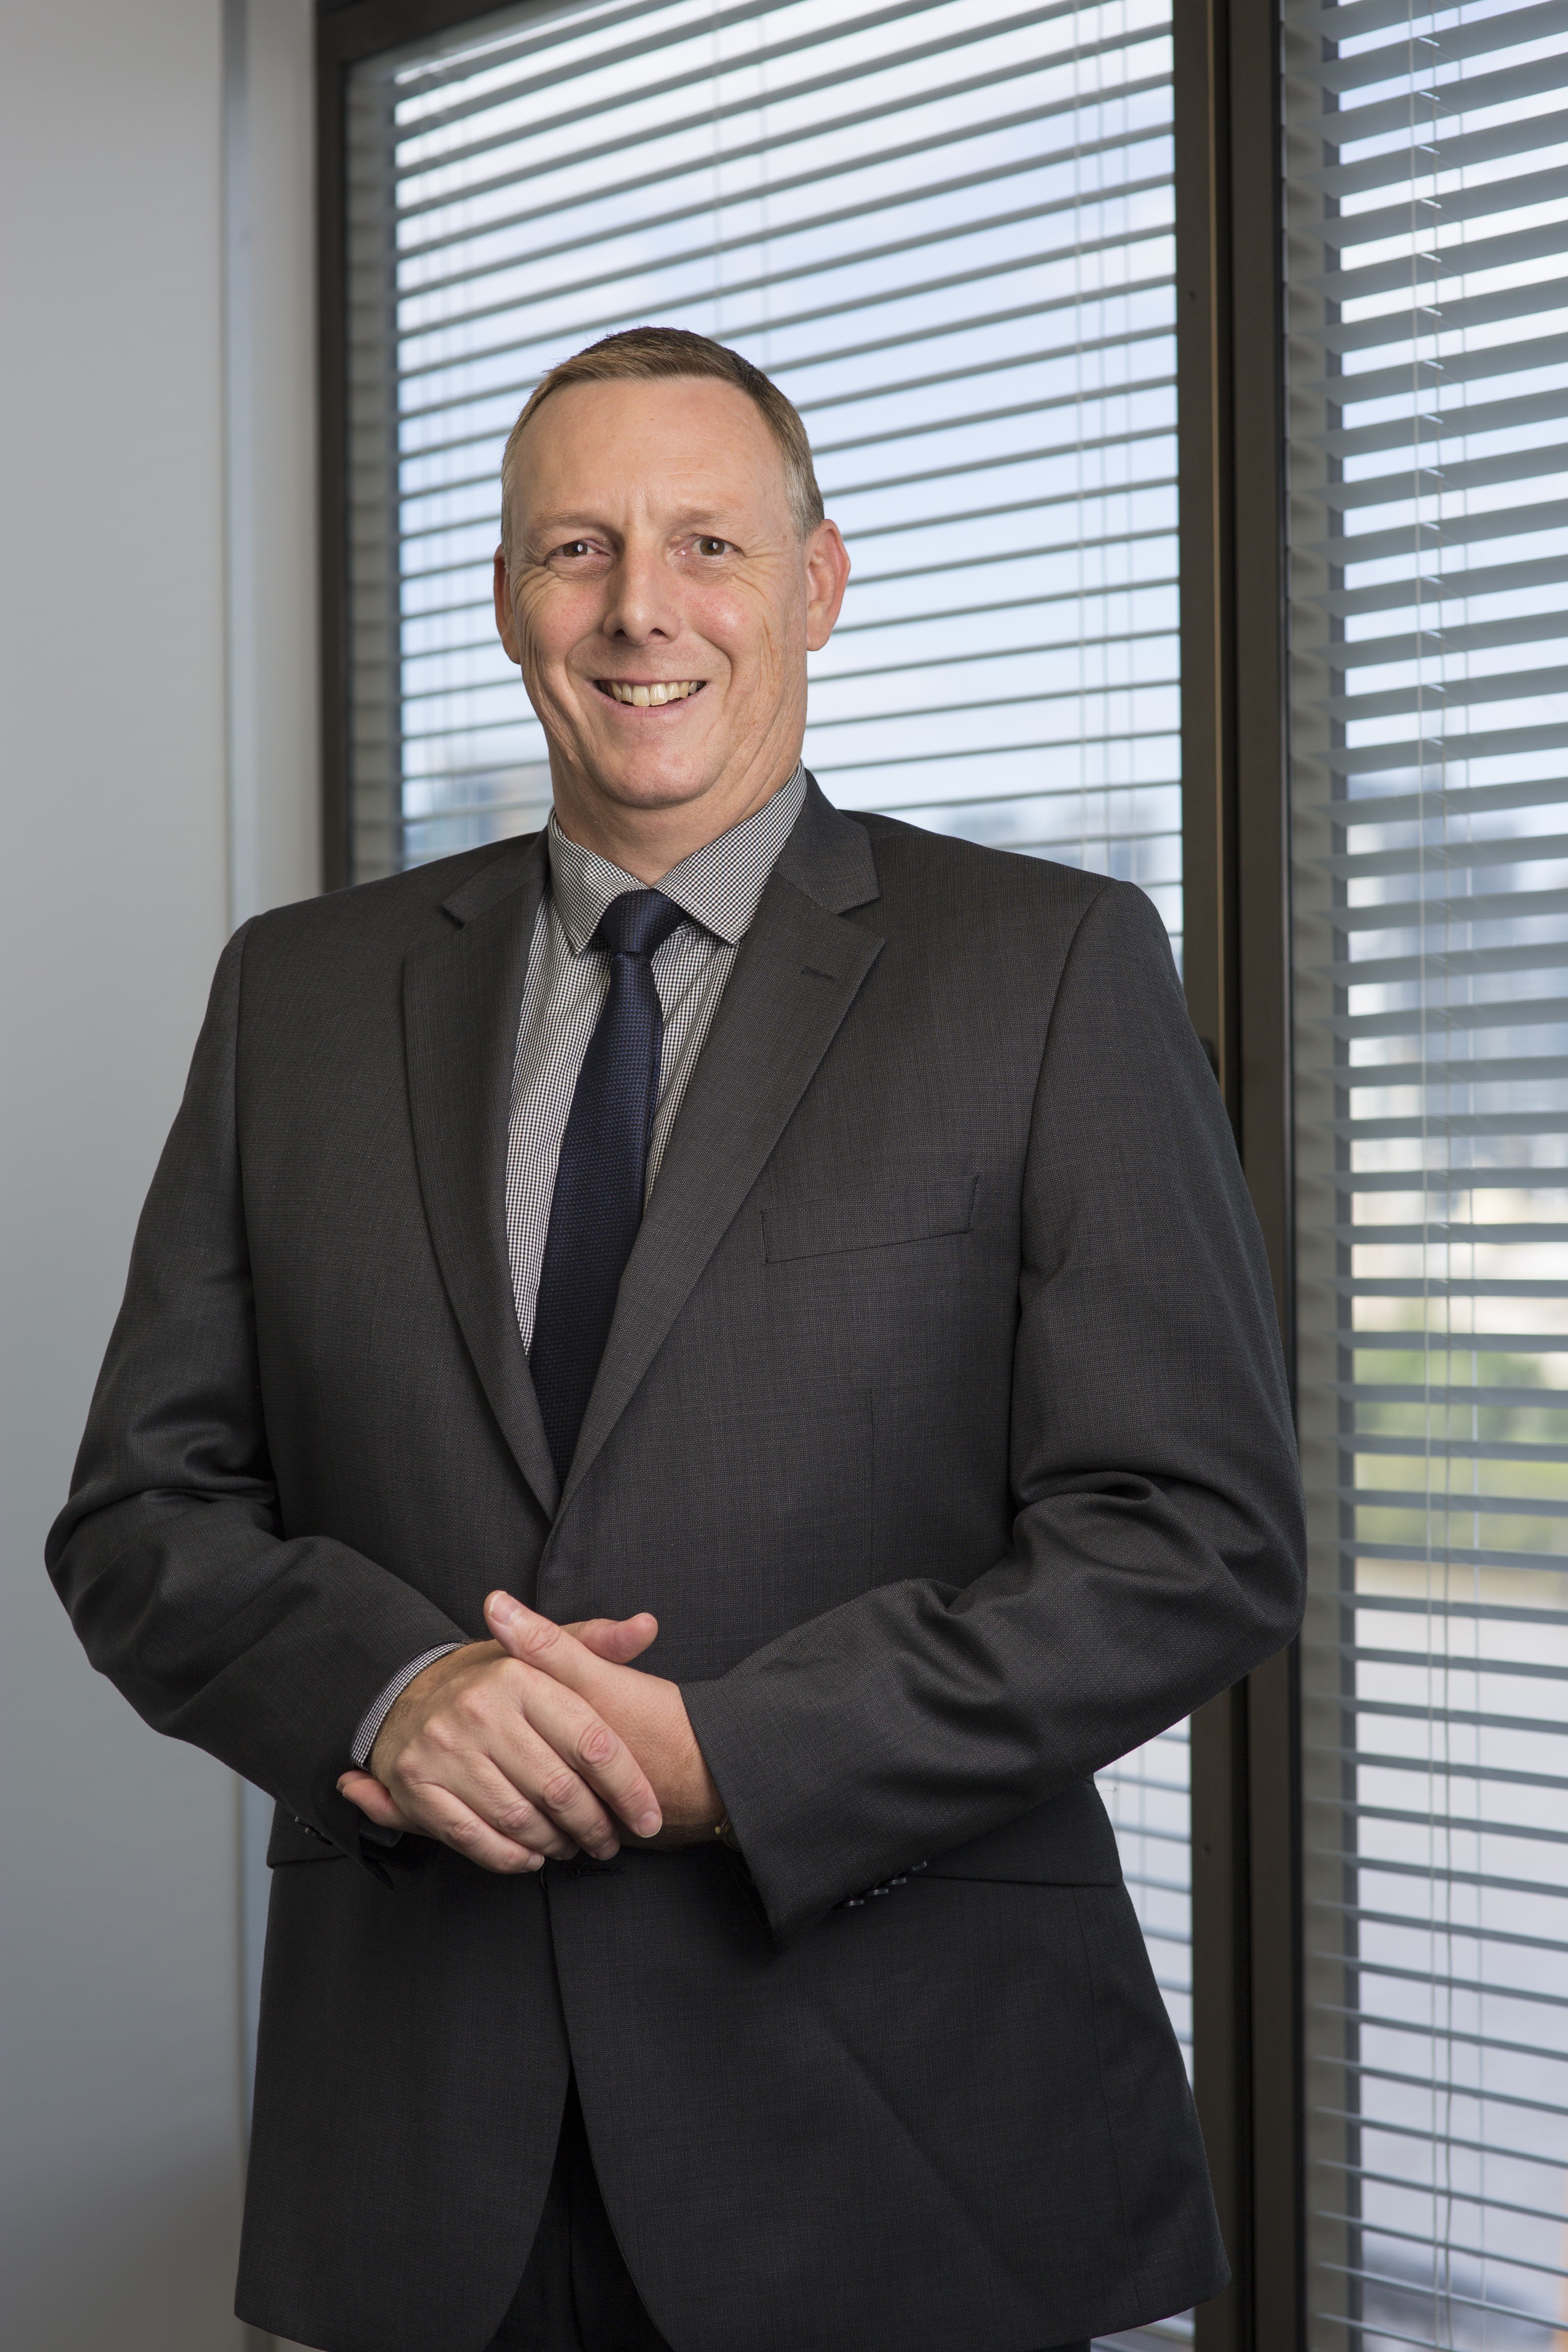 Andrew Bond, CEO